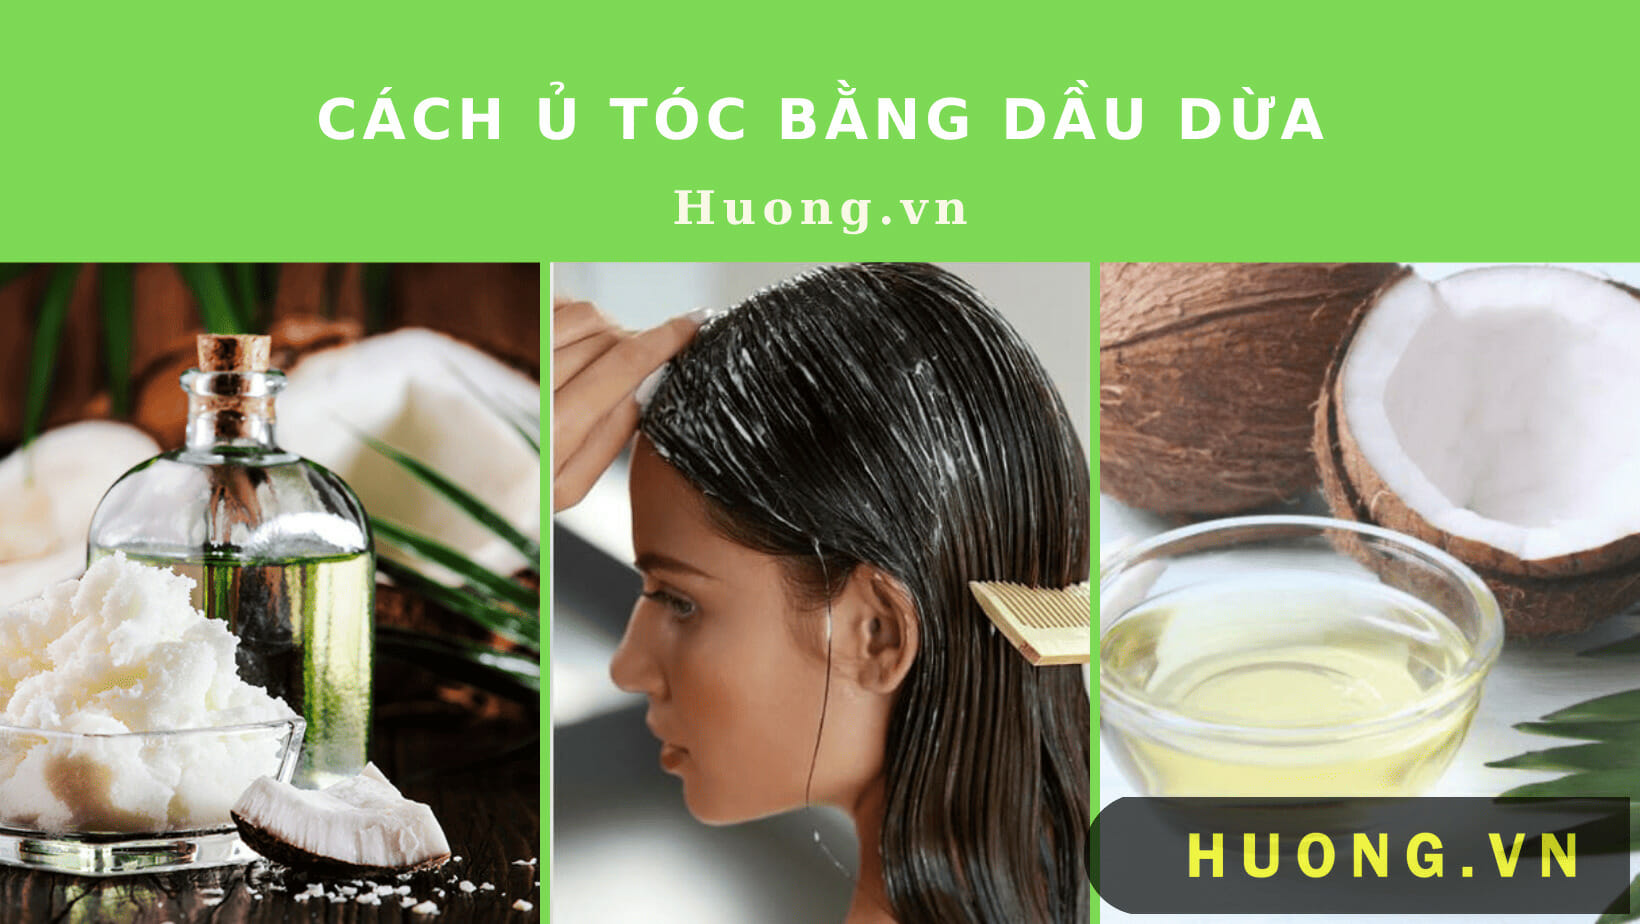 Cách ủ tóc bằng dầu dừa